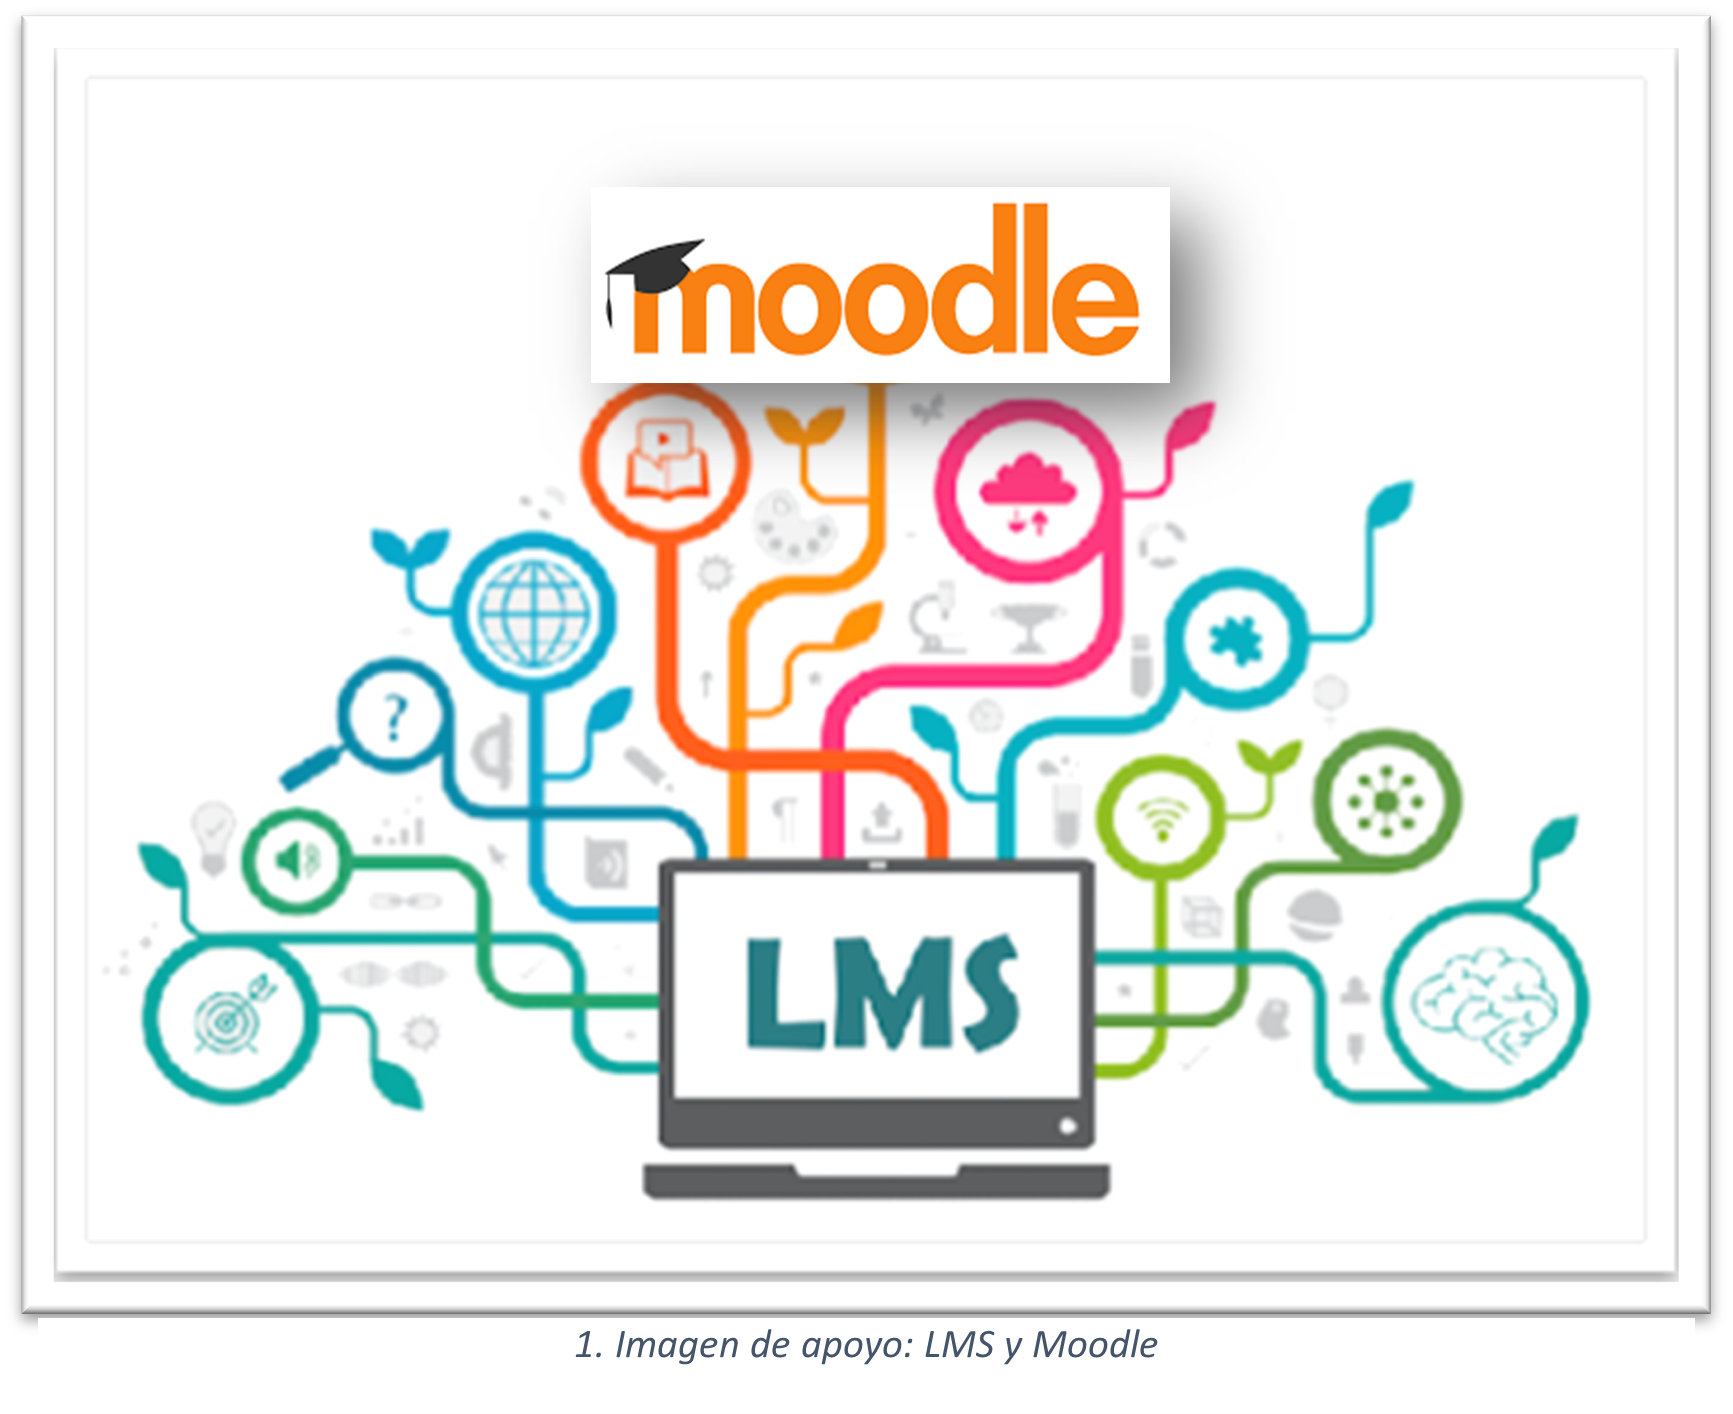 Composición que muestra la representación de un LMS y la imagen icónica de Moodle.